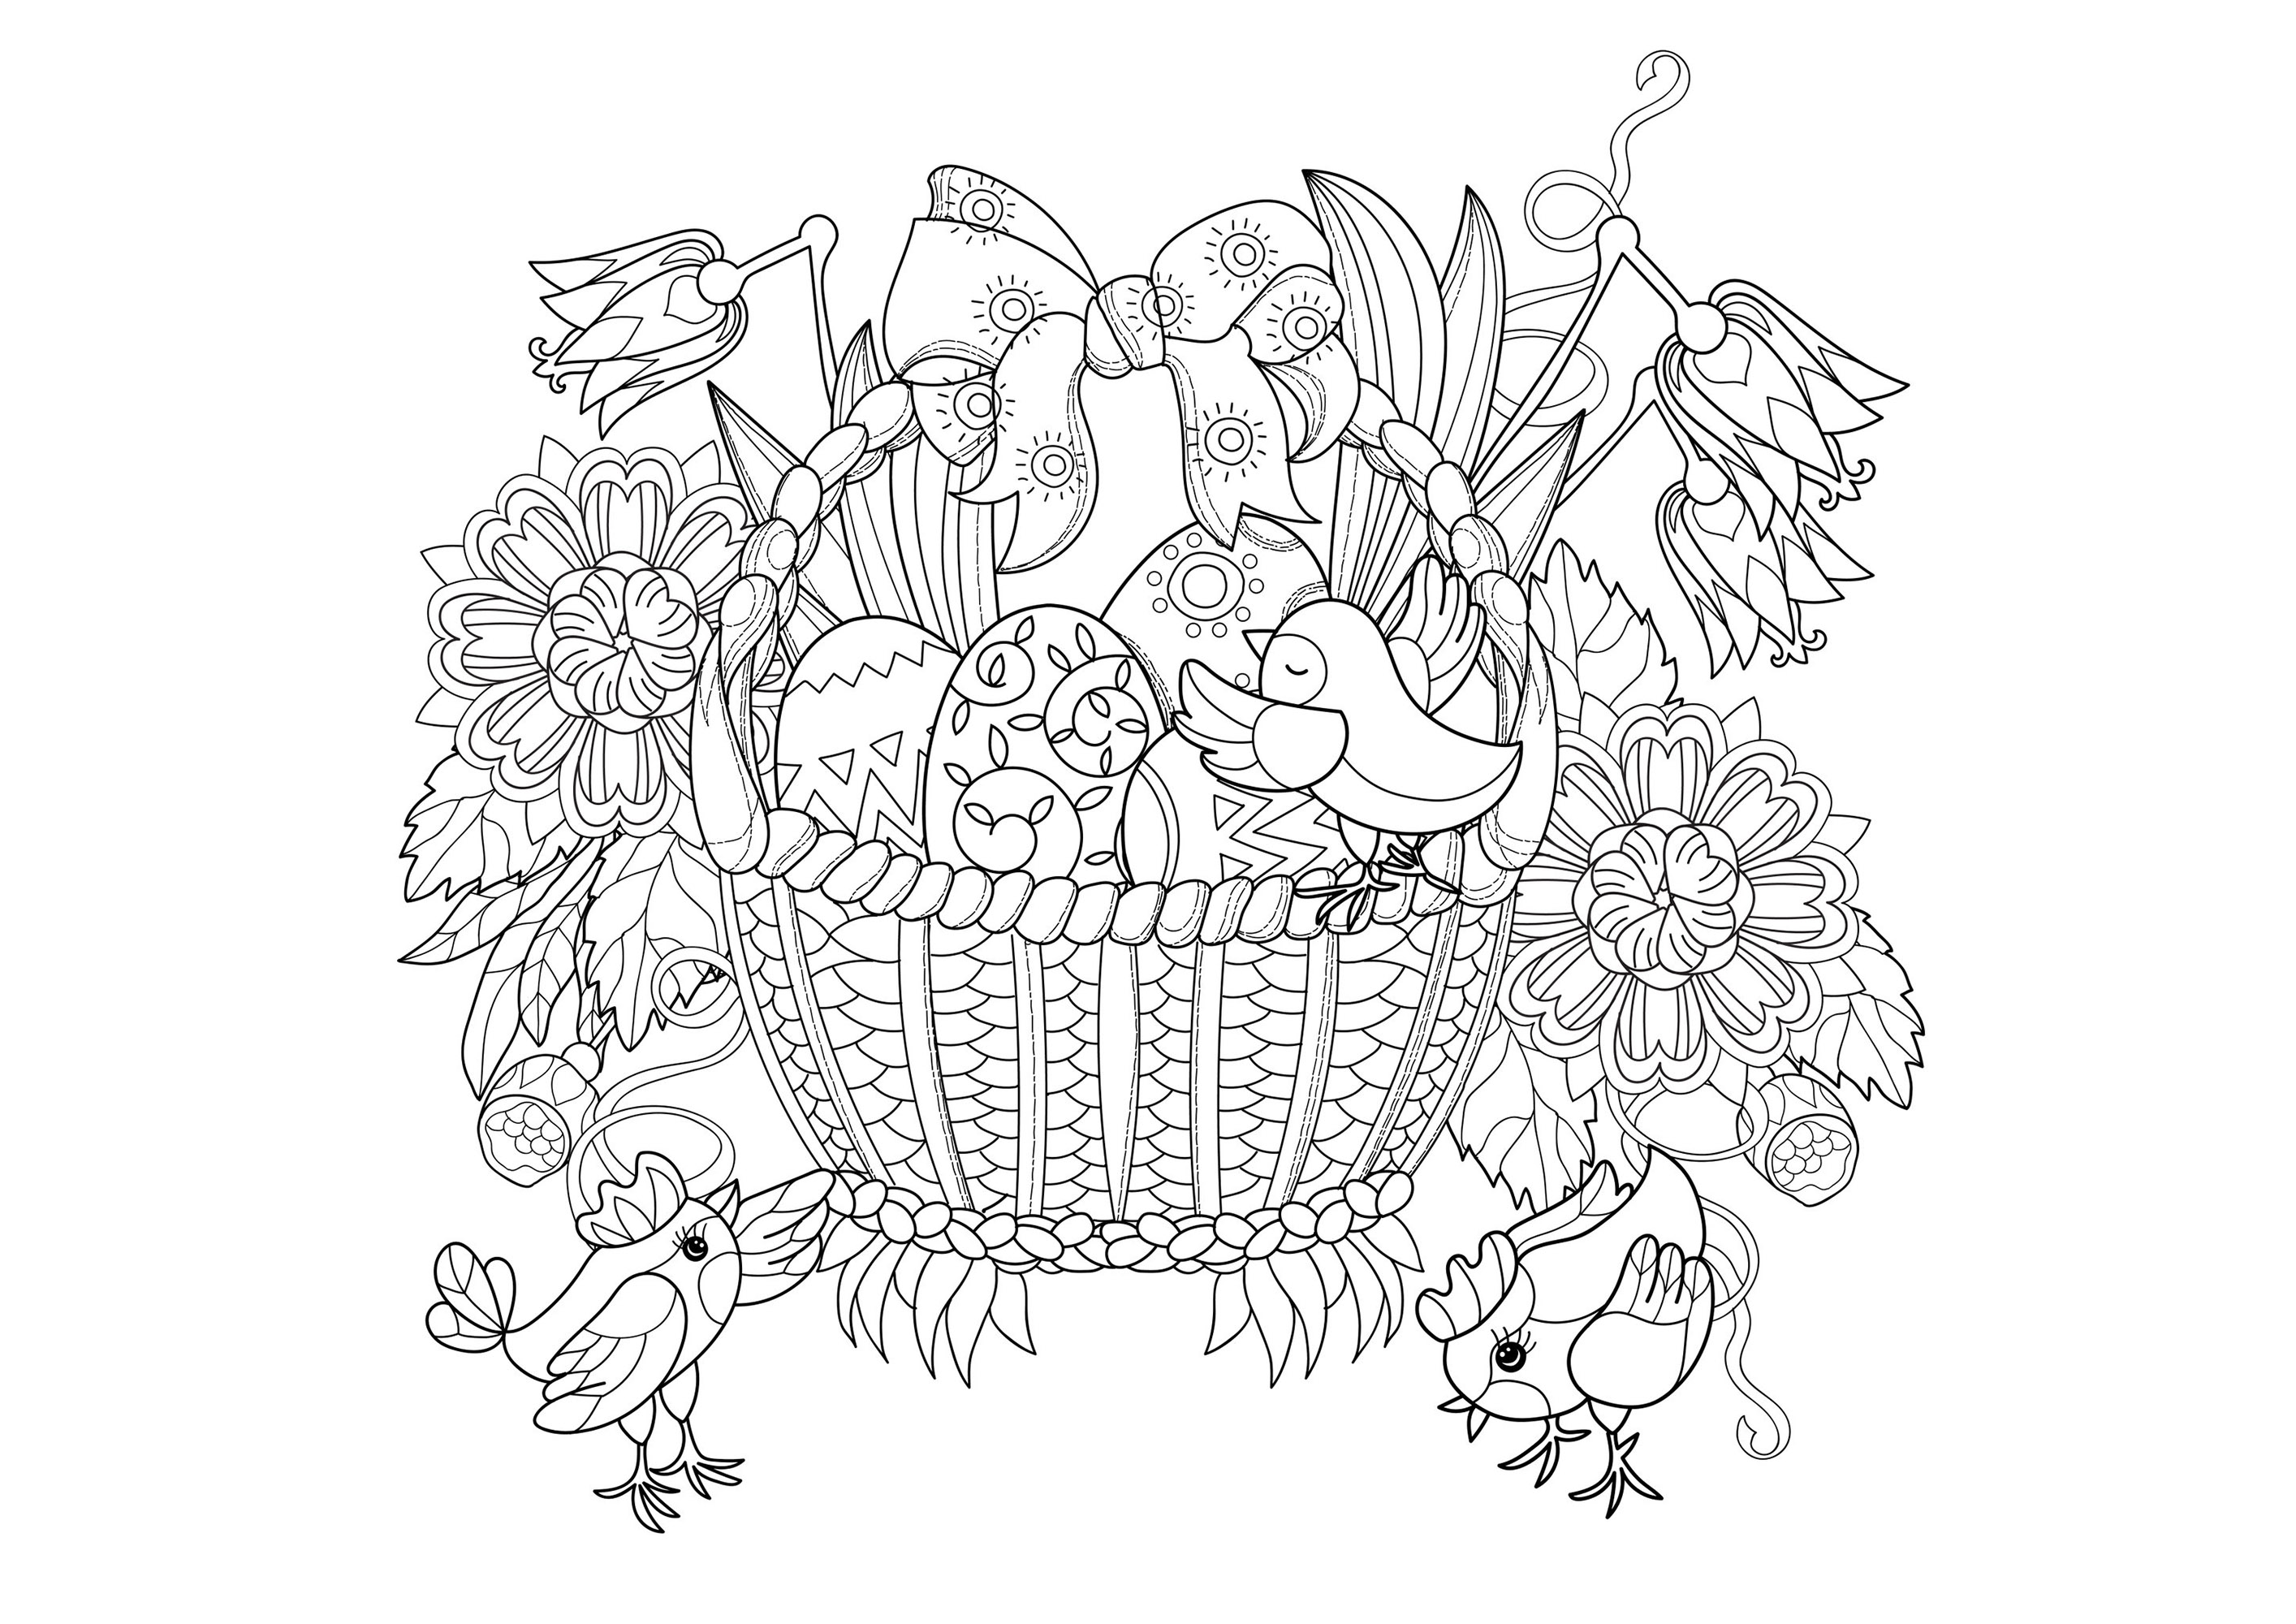 Página bonita para colorir (mas complexa) de um cesto de vime com ovos de Páscoa e passarinhos